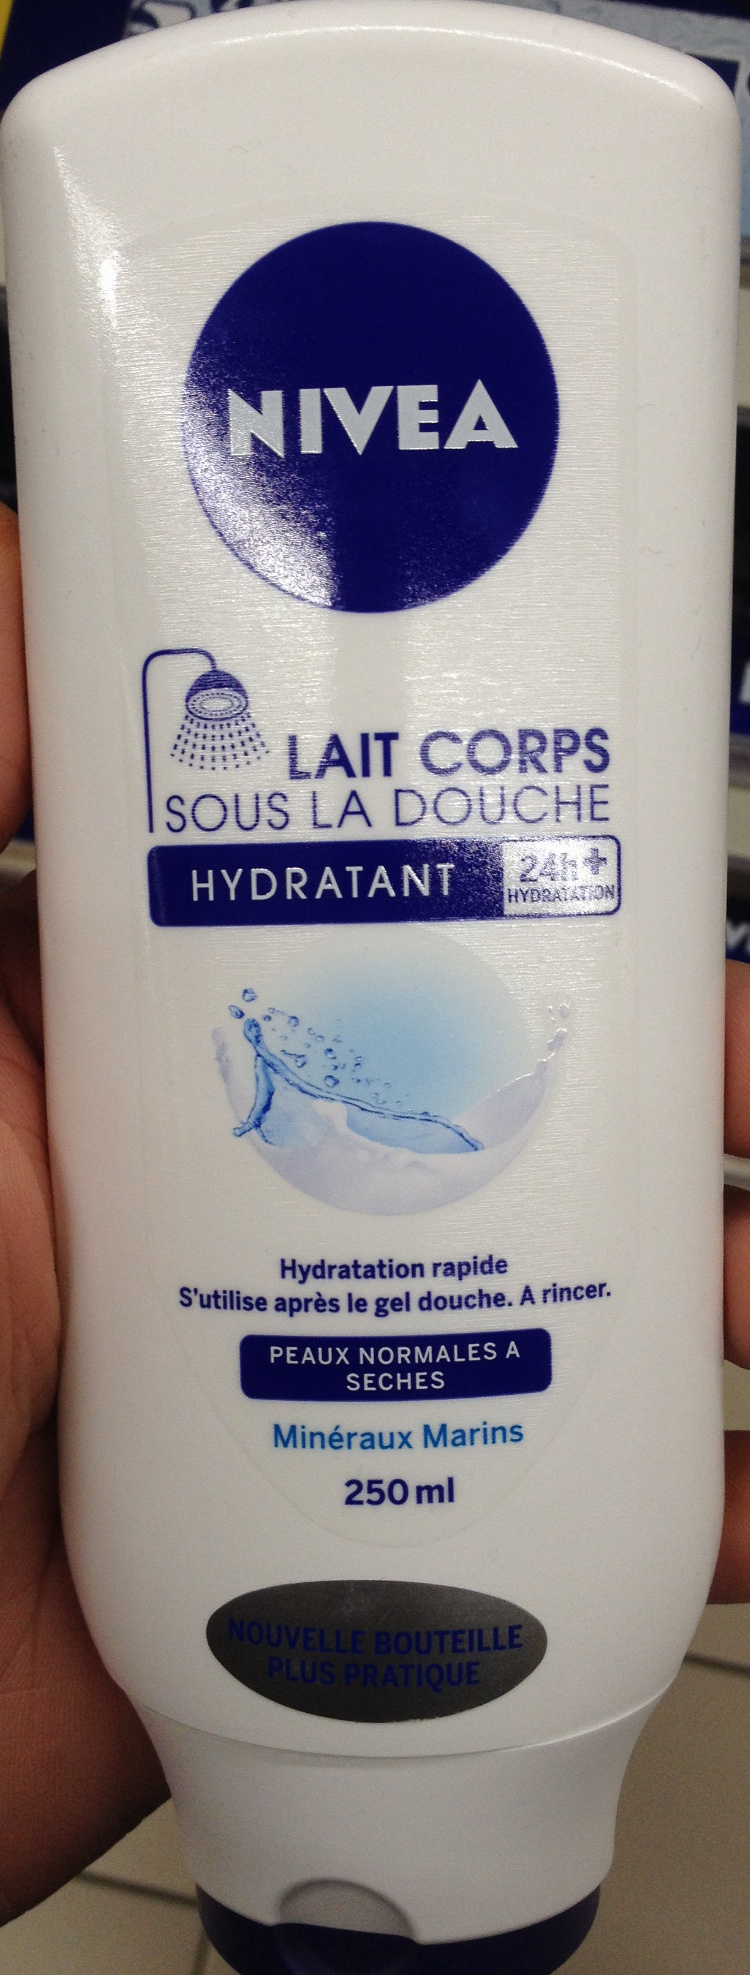 Lait corps sous la douche hydratant - Product - fr